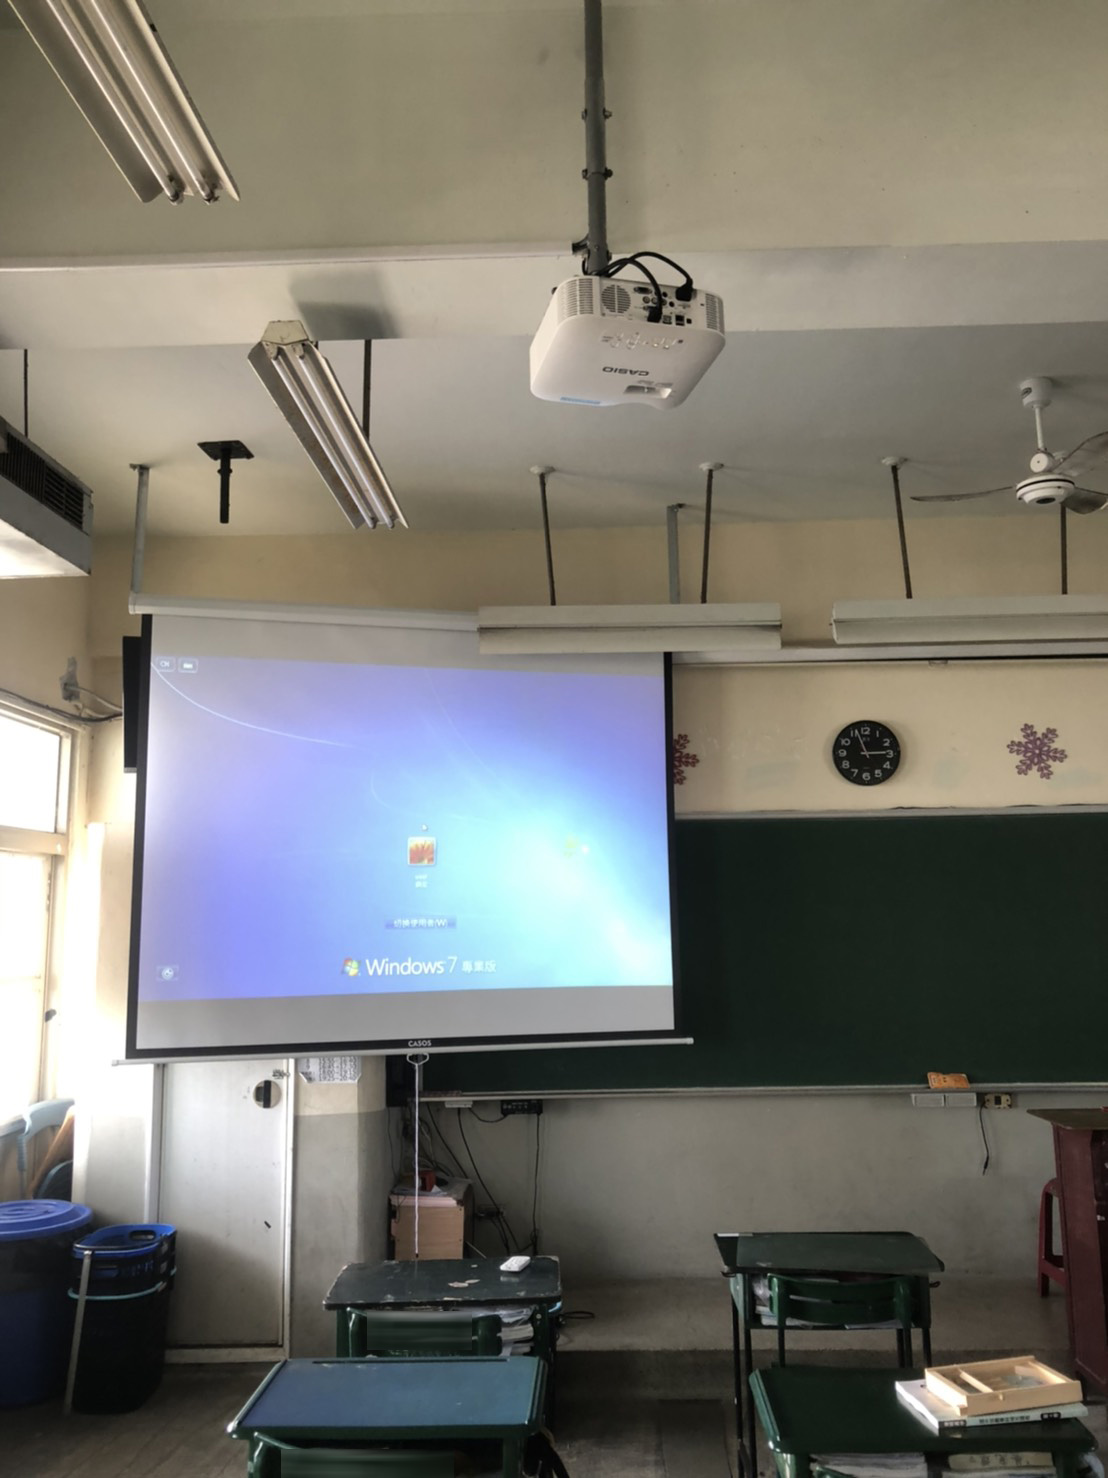 20210122 高中教室雷射投影機+手拉布幕安裝